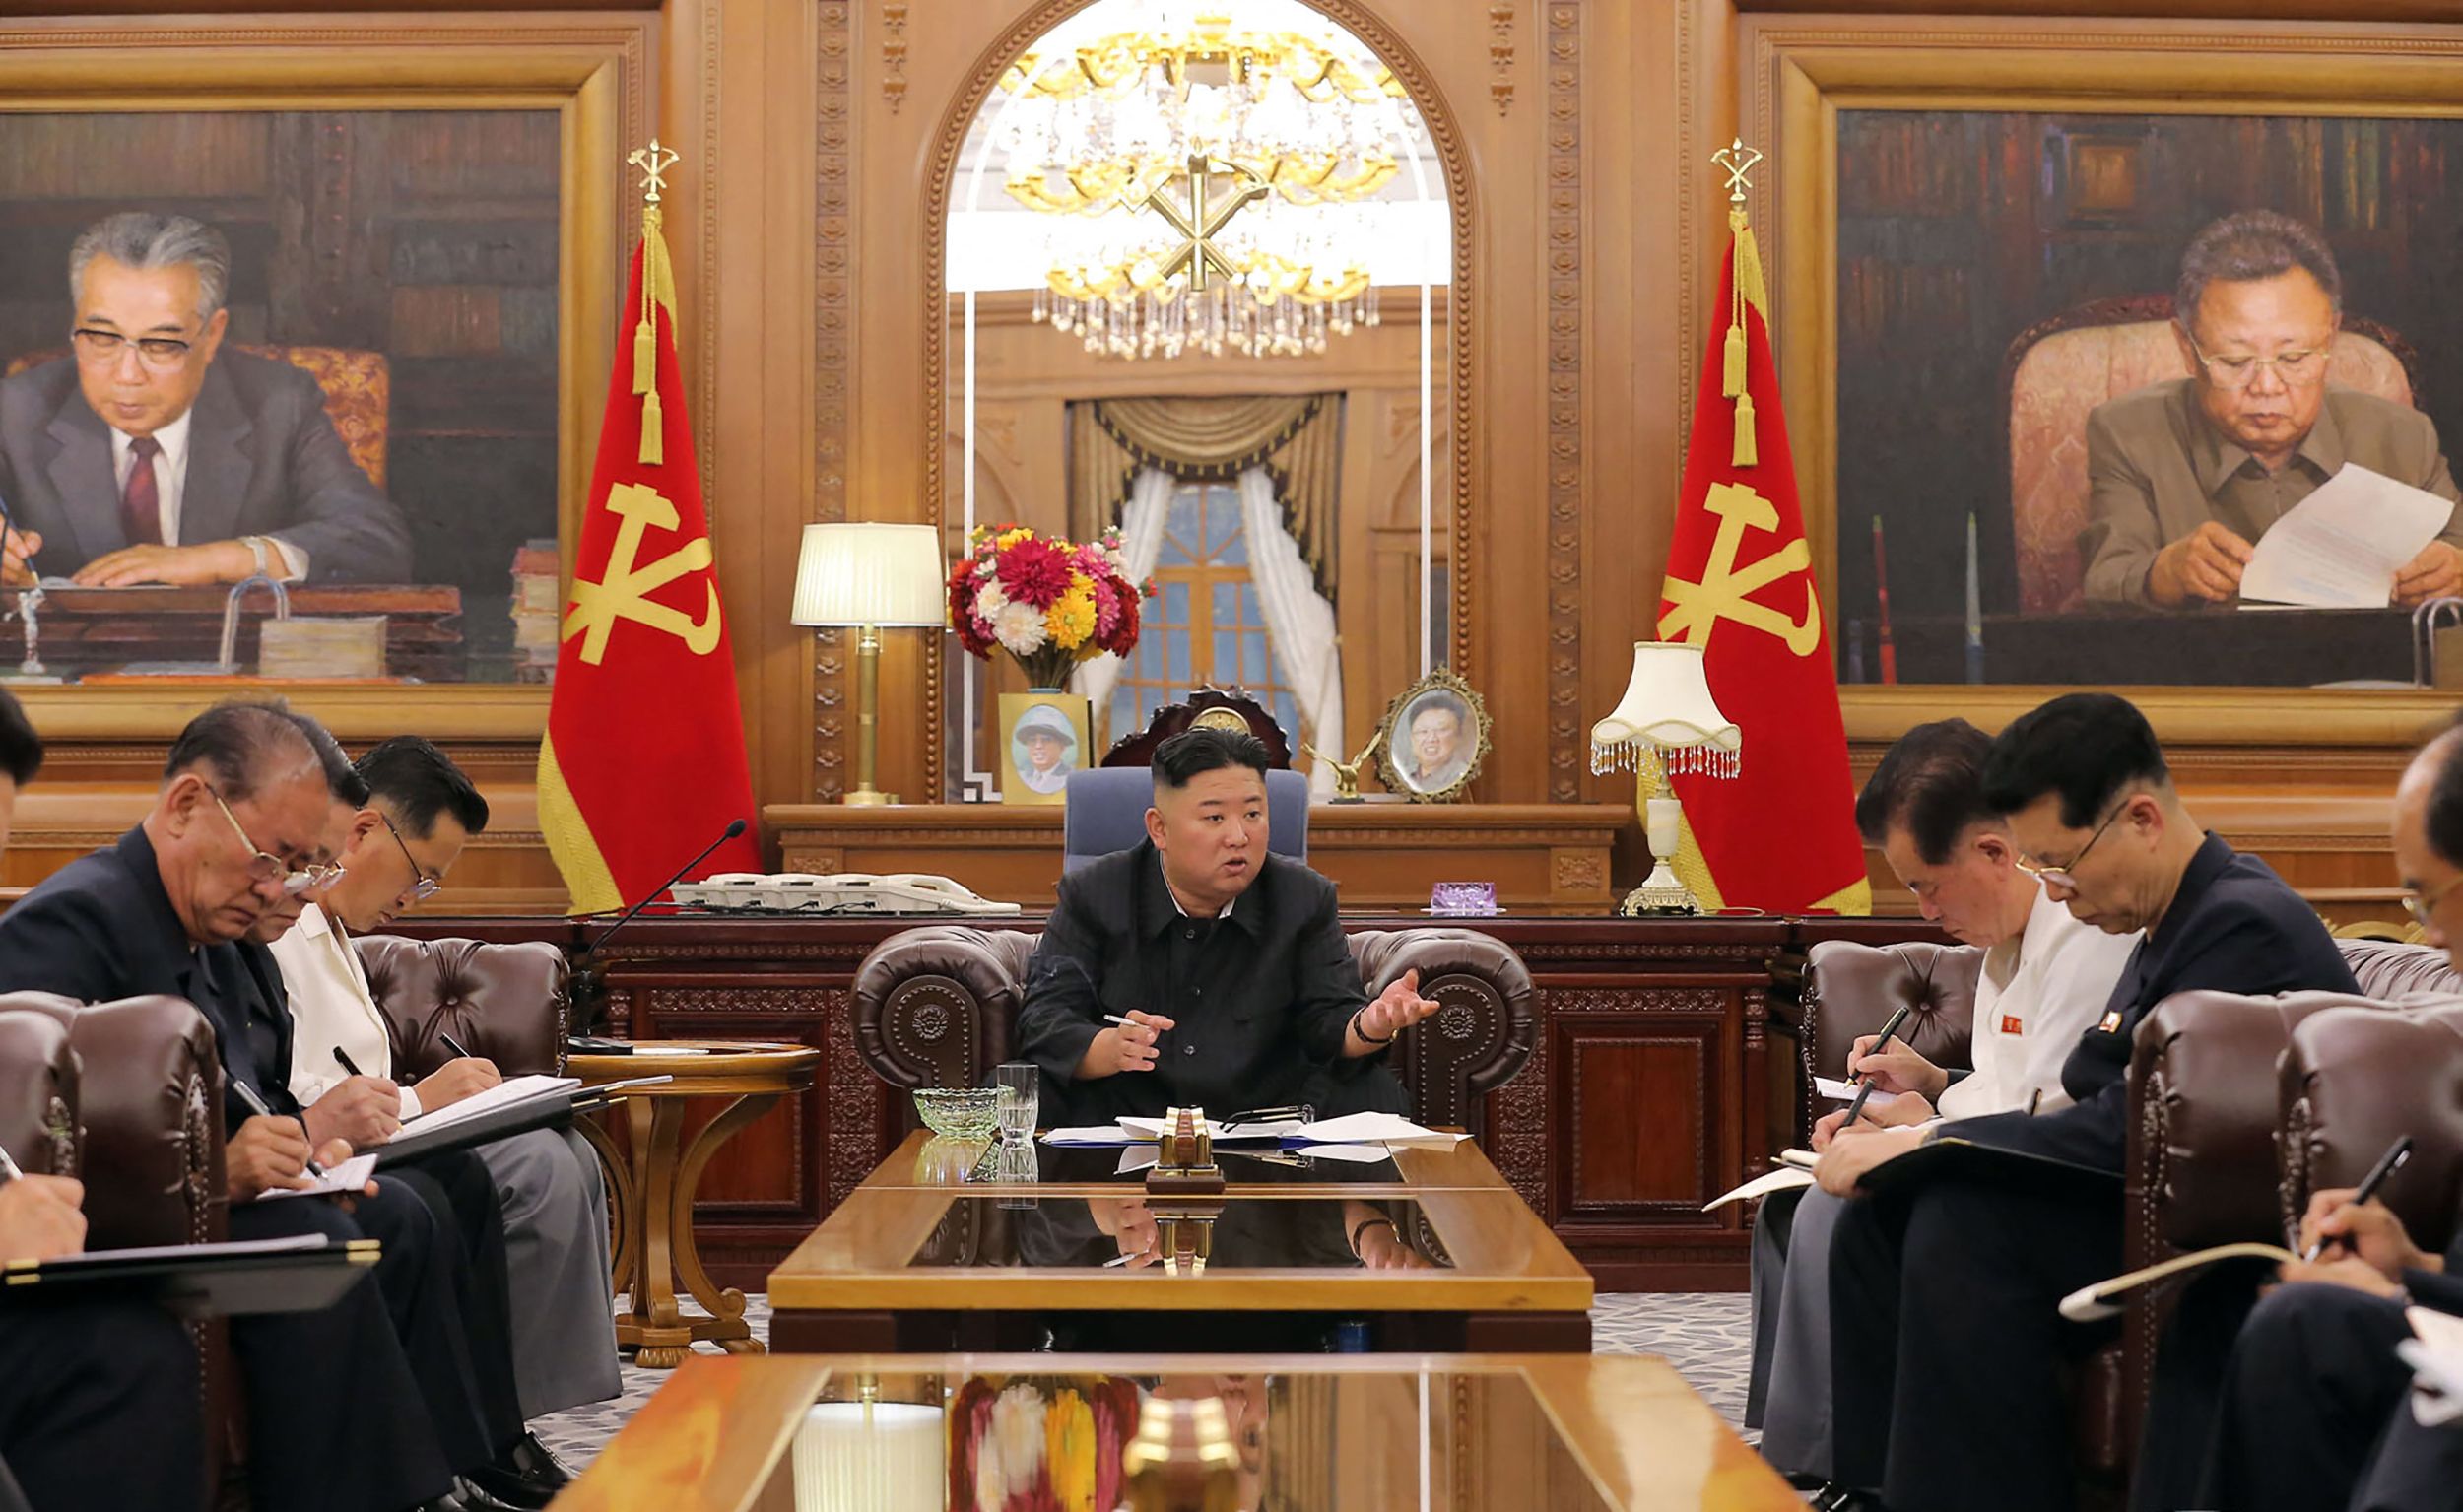 Kim Jong-Un le ha declarado la guerra al K-pop, el género de música popular que proviene del vecino país, Corea del Sur. (Foto Prensa Libre: Hemeroteca PL)